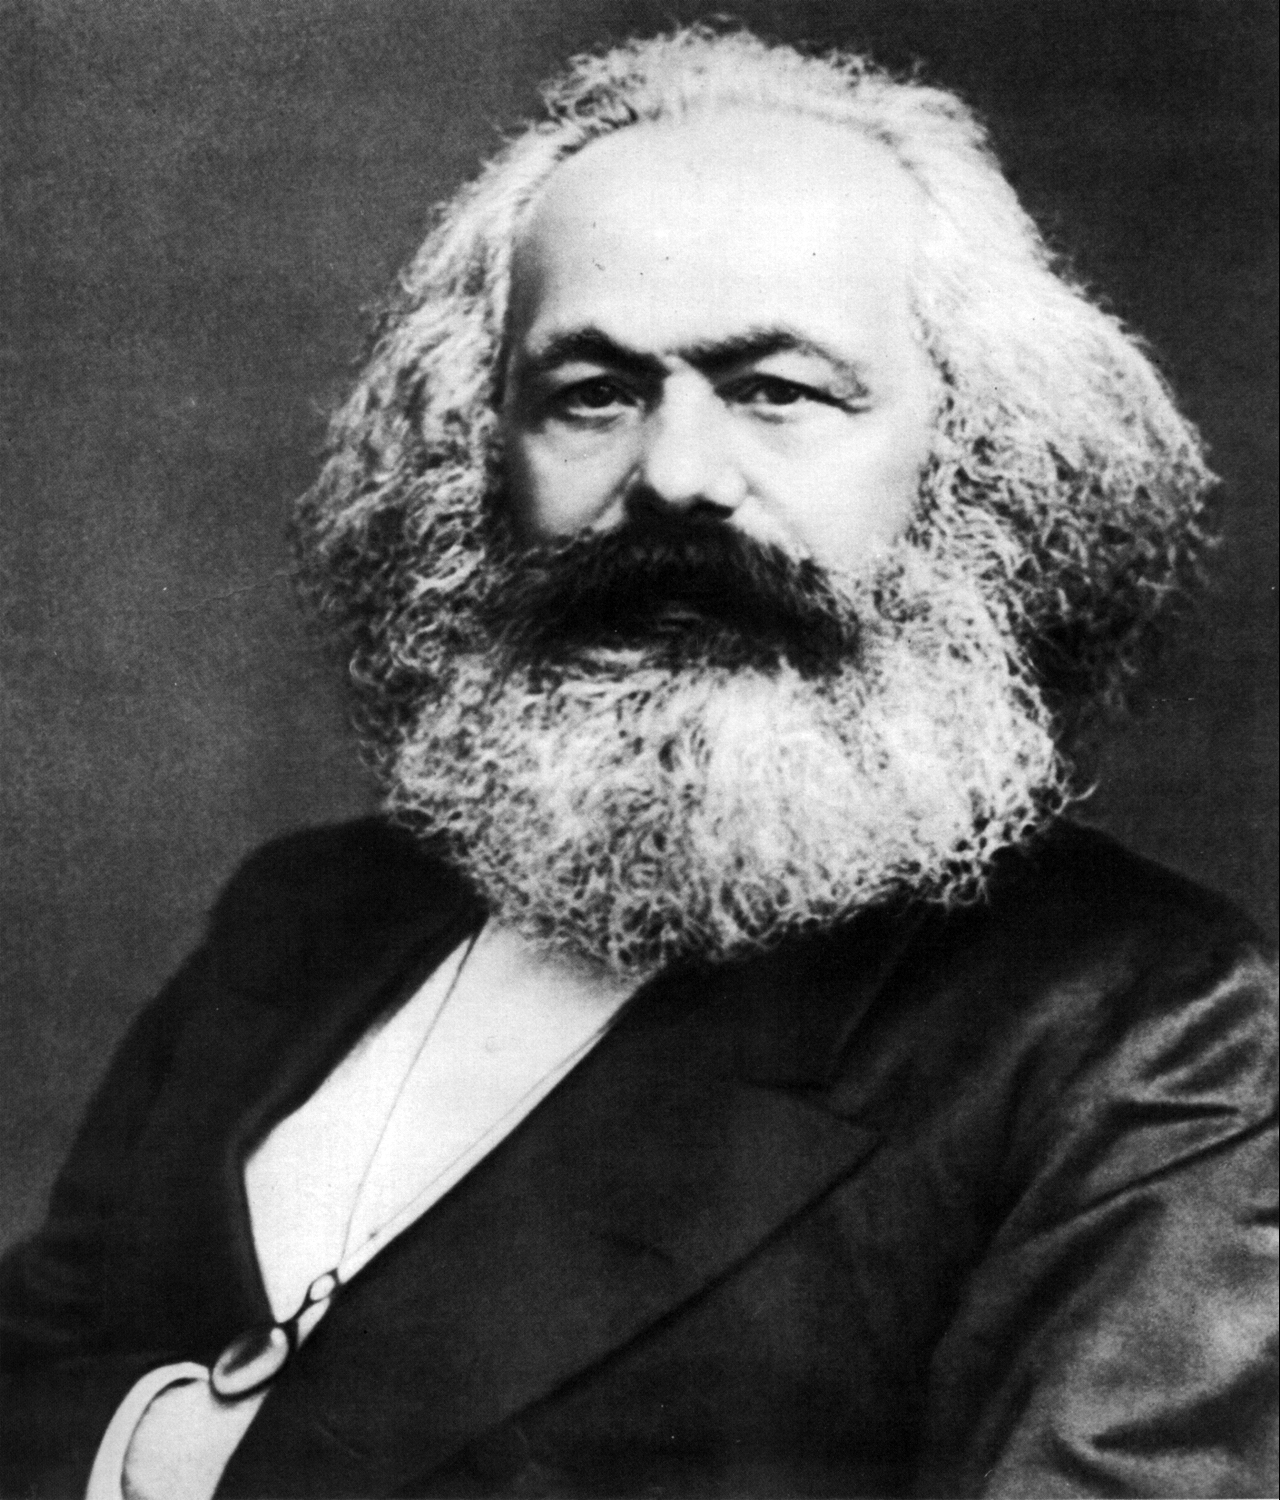 Karl Marx photo Wikimedia Commons/Creative Commons, credit: Wikimedia Commons/Creative Commons (uploaded 24/05/2017)